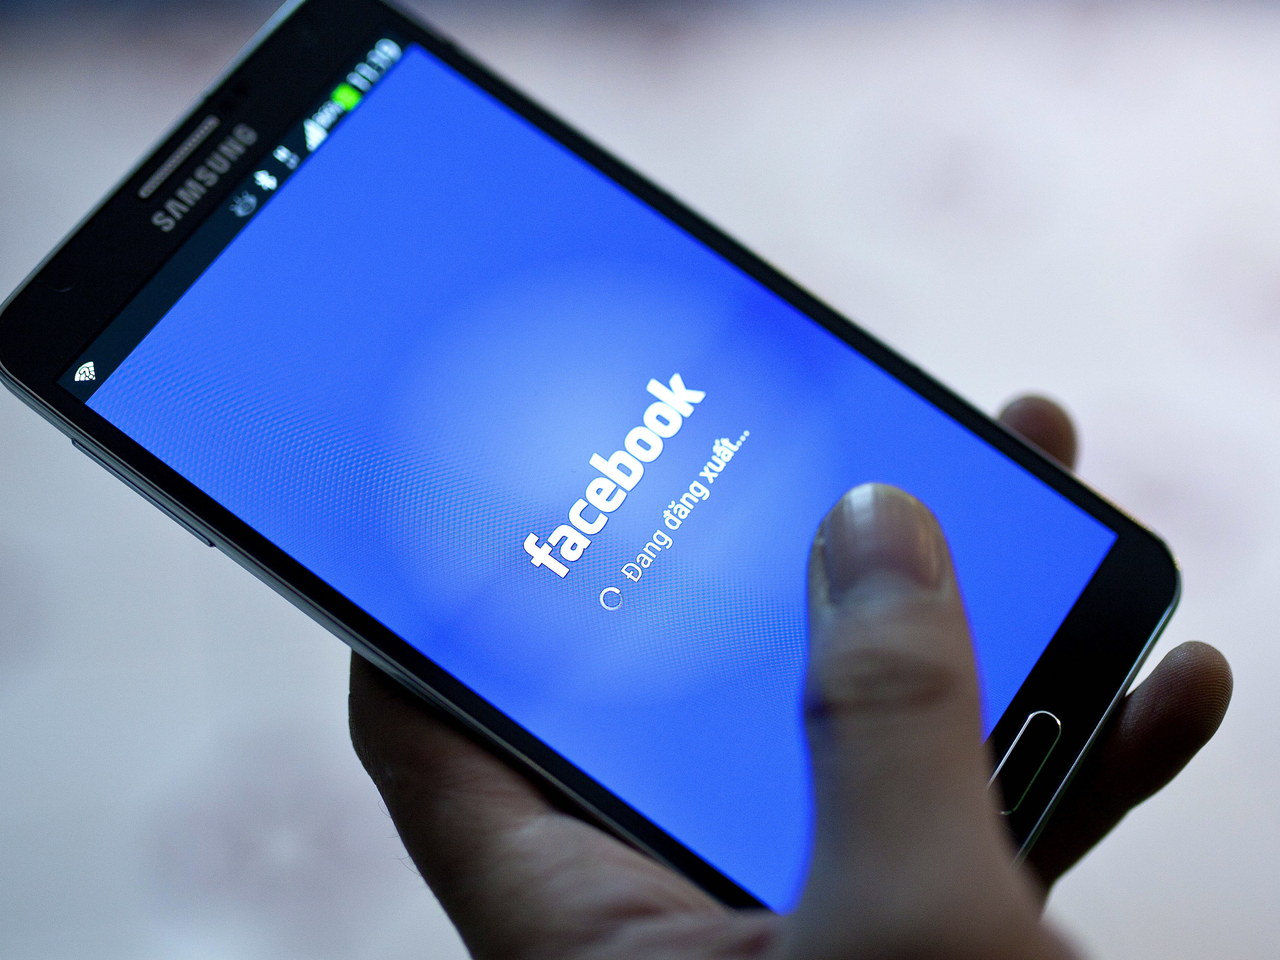 Facebook ofiarą hakerów. Mogły wyciec dane 50 mln użytkowników